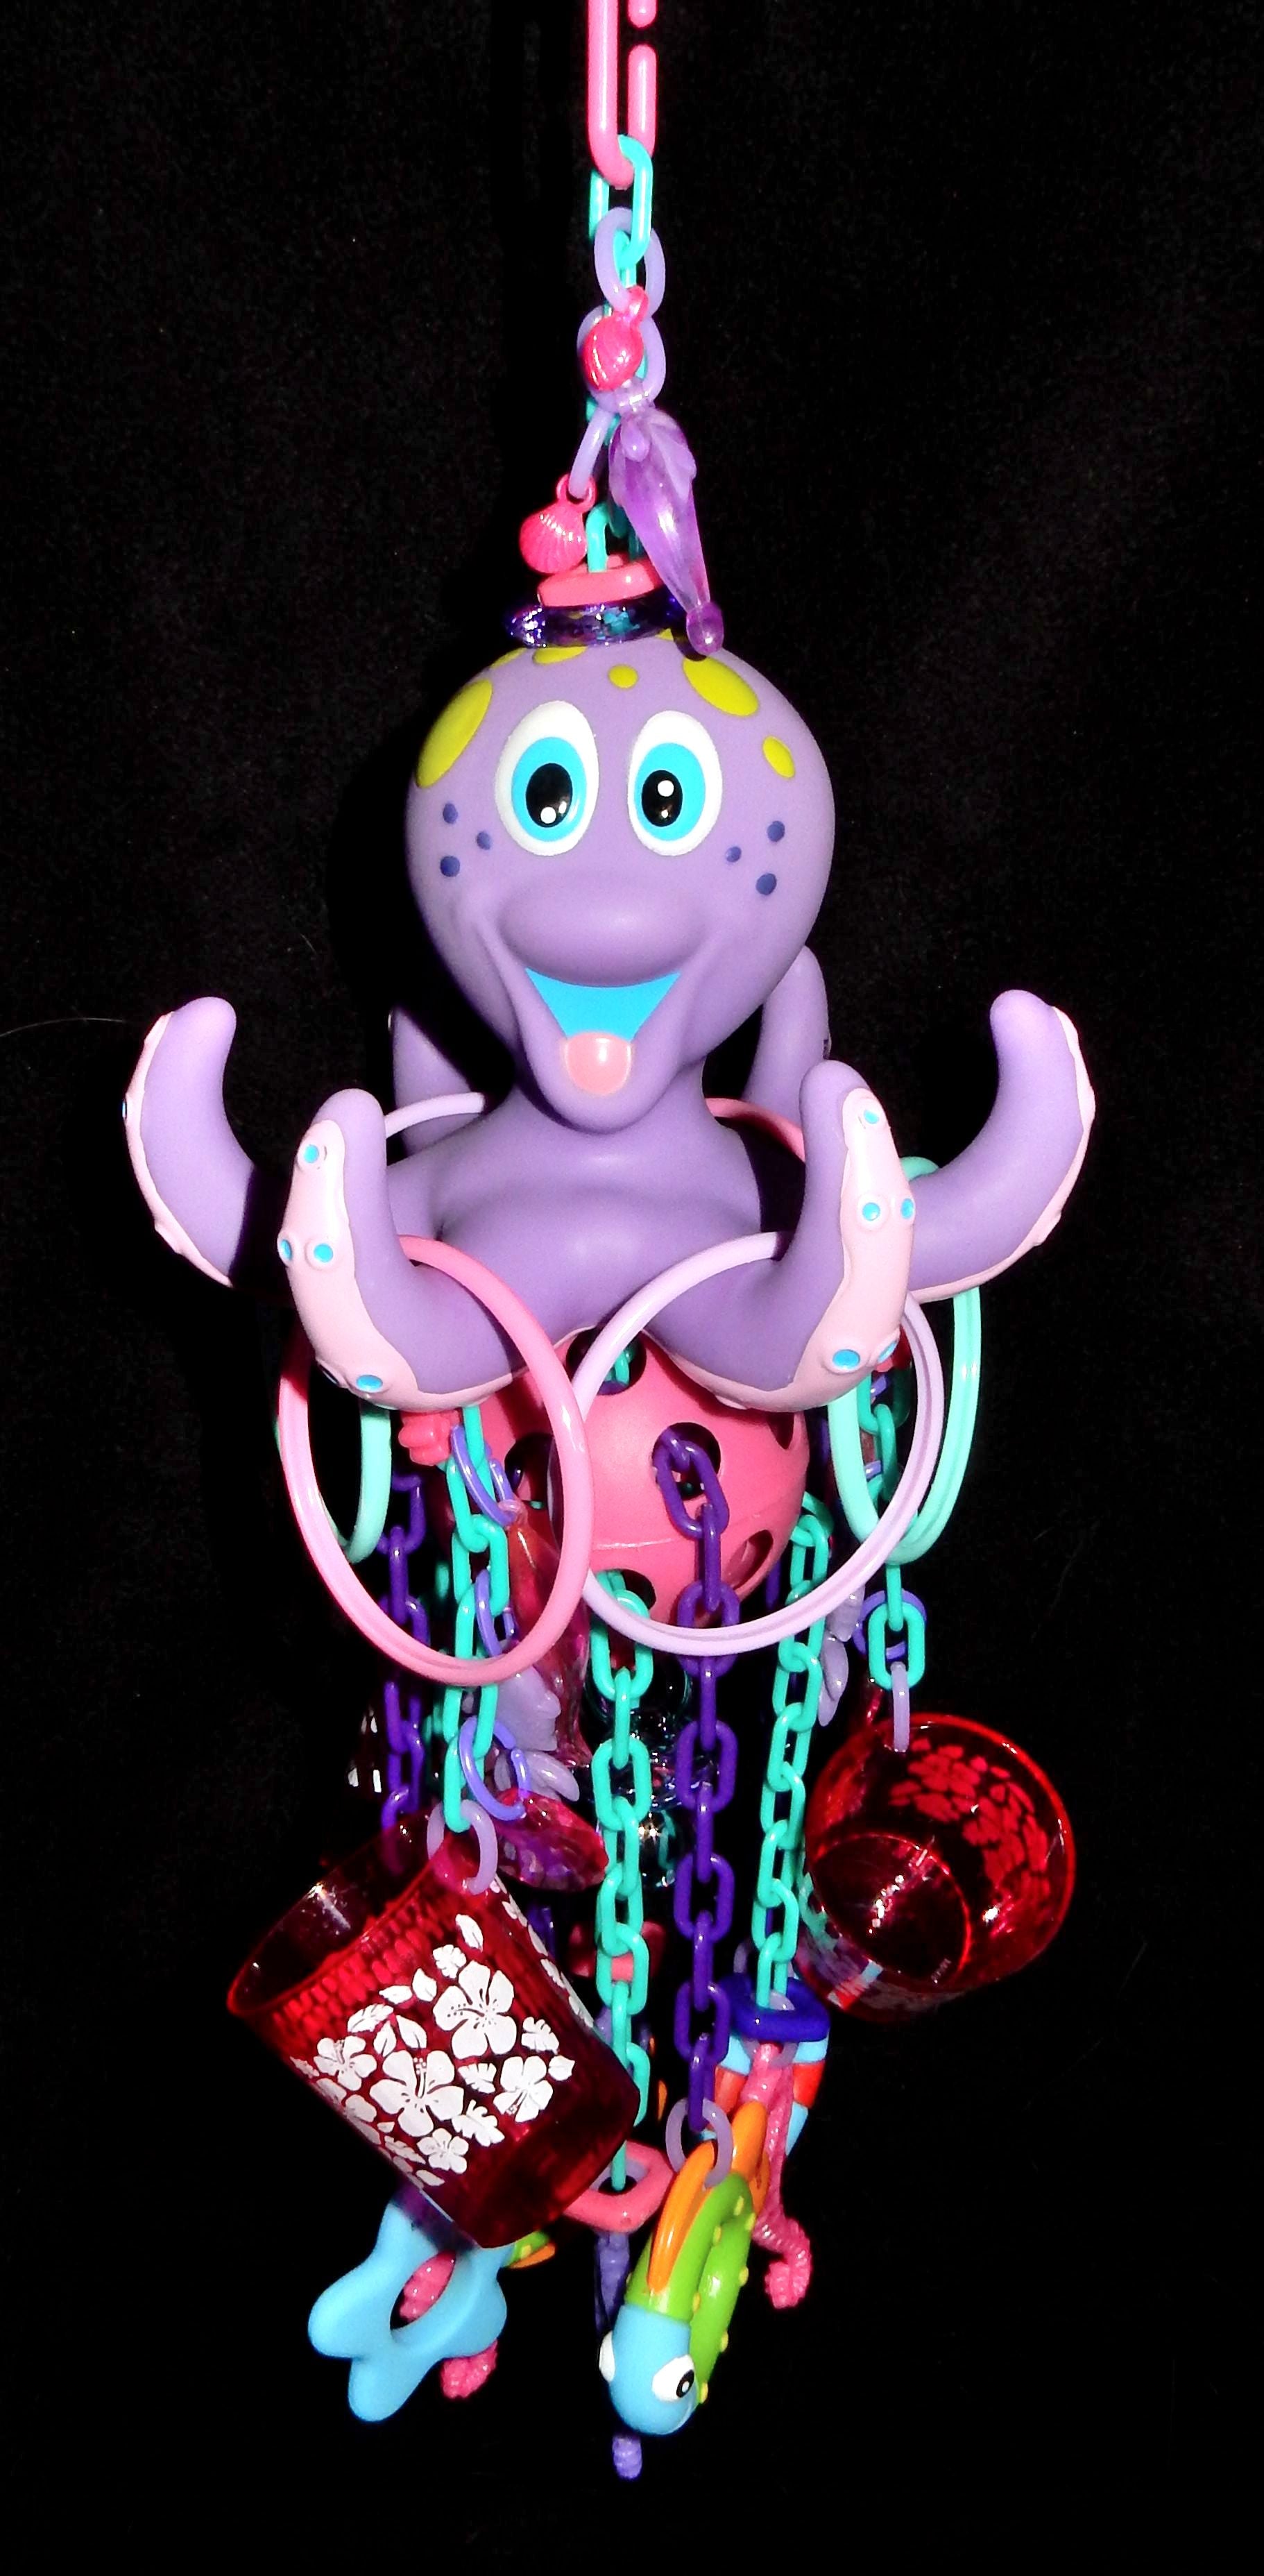 Super Deluxe Octopus Reset Toy